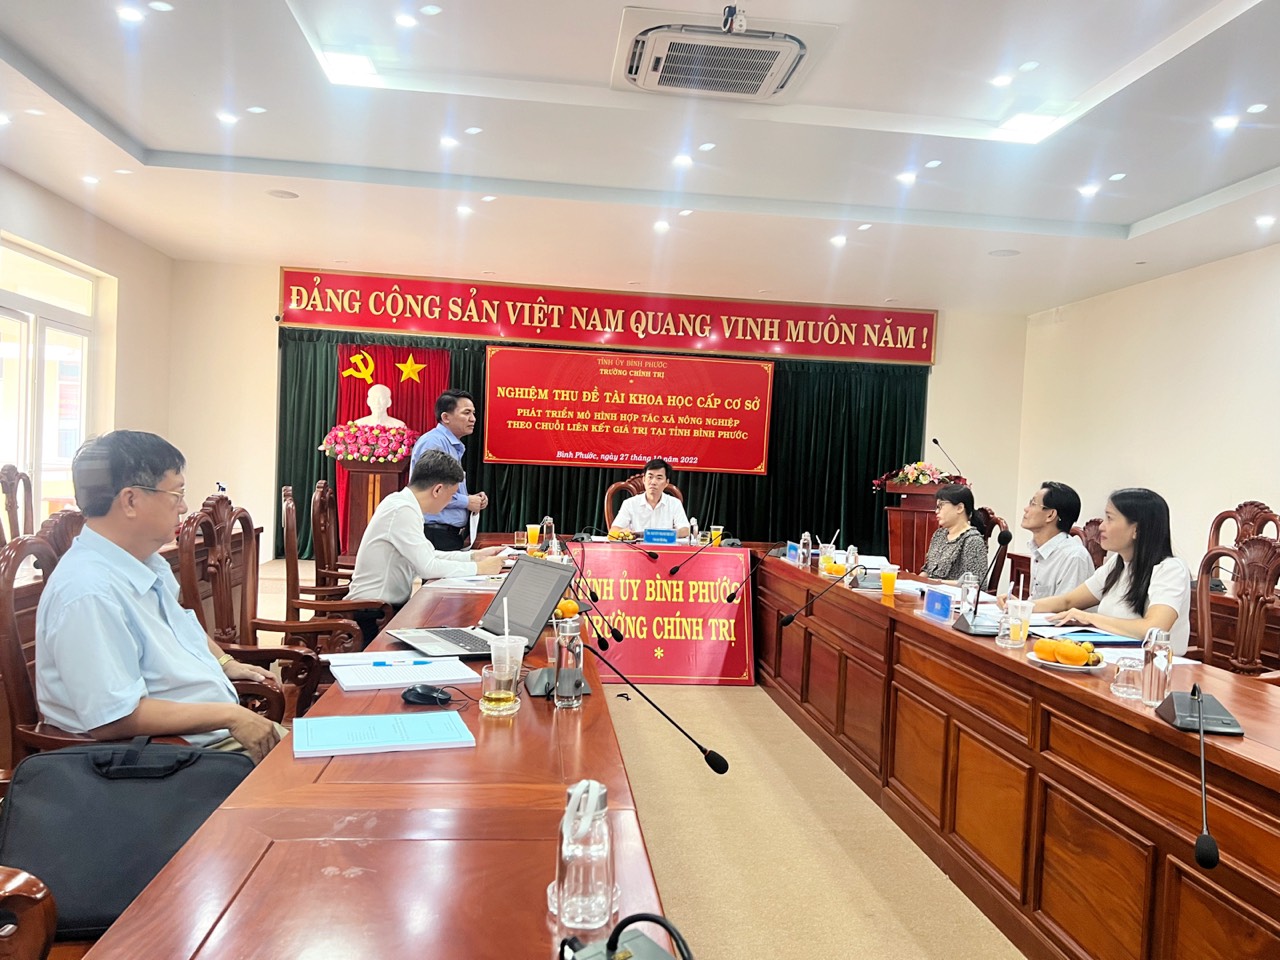 ThS. Nguyễn Thanh Thuyên - Hiệu trưởng - Chủ tịch hội đồng - Chủ trì họp Hội đồng nghiệm thu